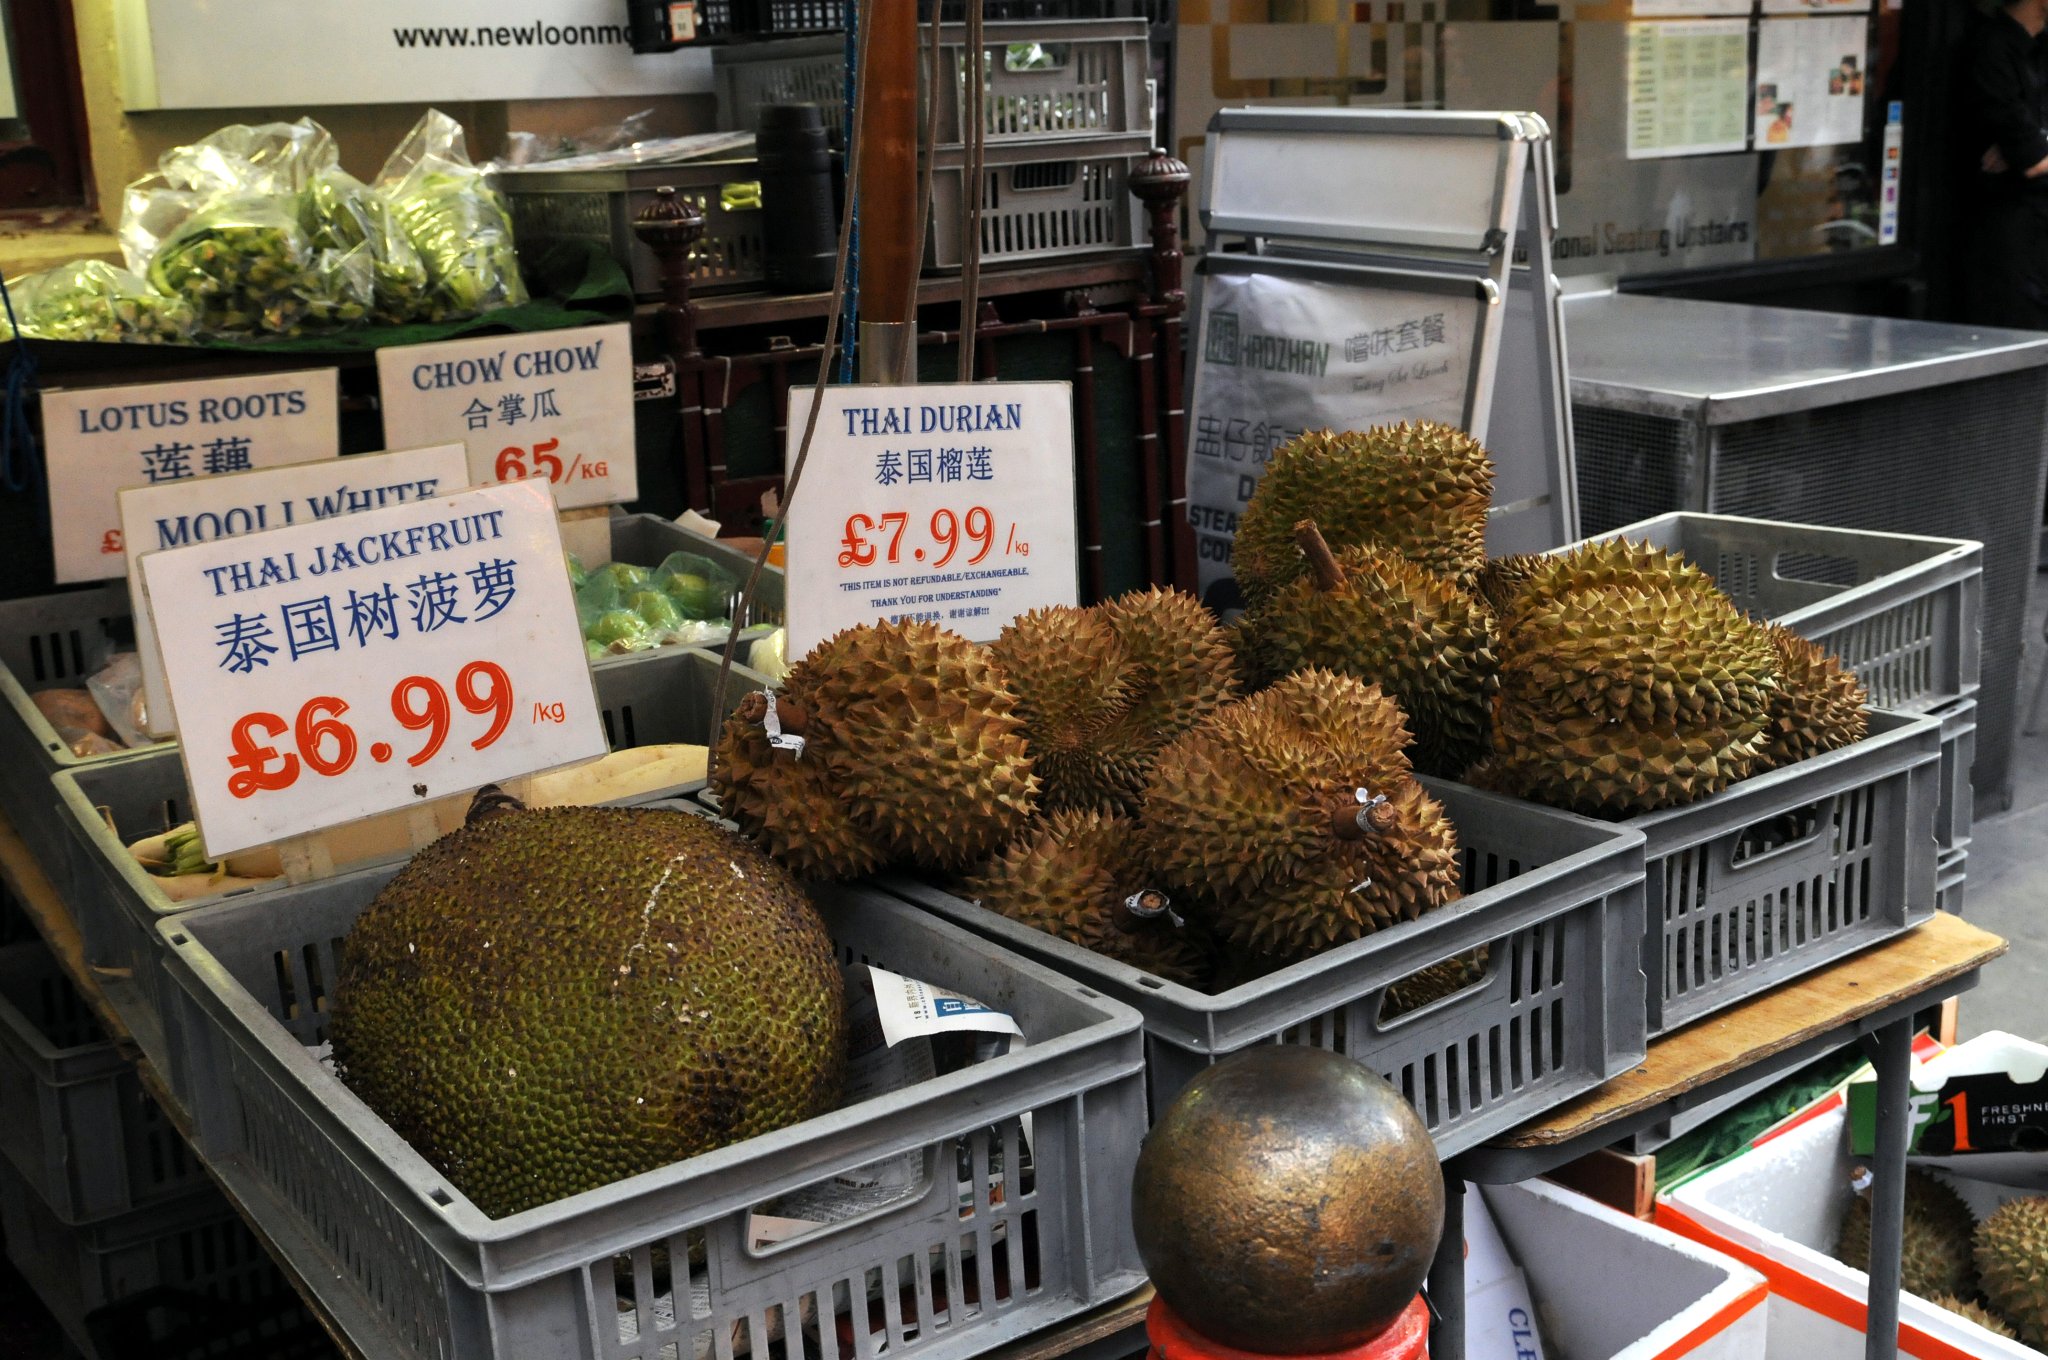 DSC_6066_1.jpg - Durian je u nás znám především jako plod durianu cibetkového (Durio zibethinus). V Jihovýchodní Asii je považovaný za největší pochoutku mezi ovocem. Veliké, těžké, zelené plody pokryté tlustou slupkou plnou pyramidových výrůstků ukrývají krémovitou béžovou hmotu obklopující červenohnědá semena. Zralý plod intenzivně páchne, a proto je například v Thajsku přísně zakázáno cestovat městskou hromadnou dopravou s tímto ovocem.